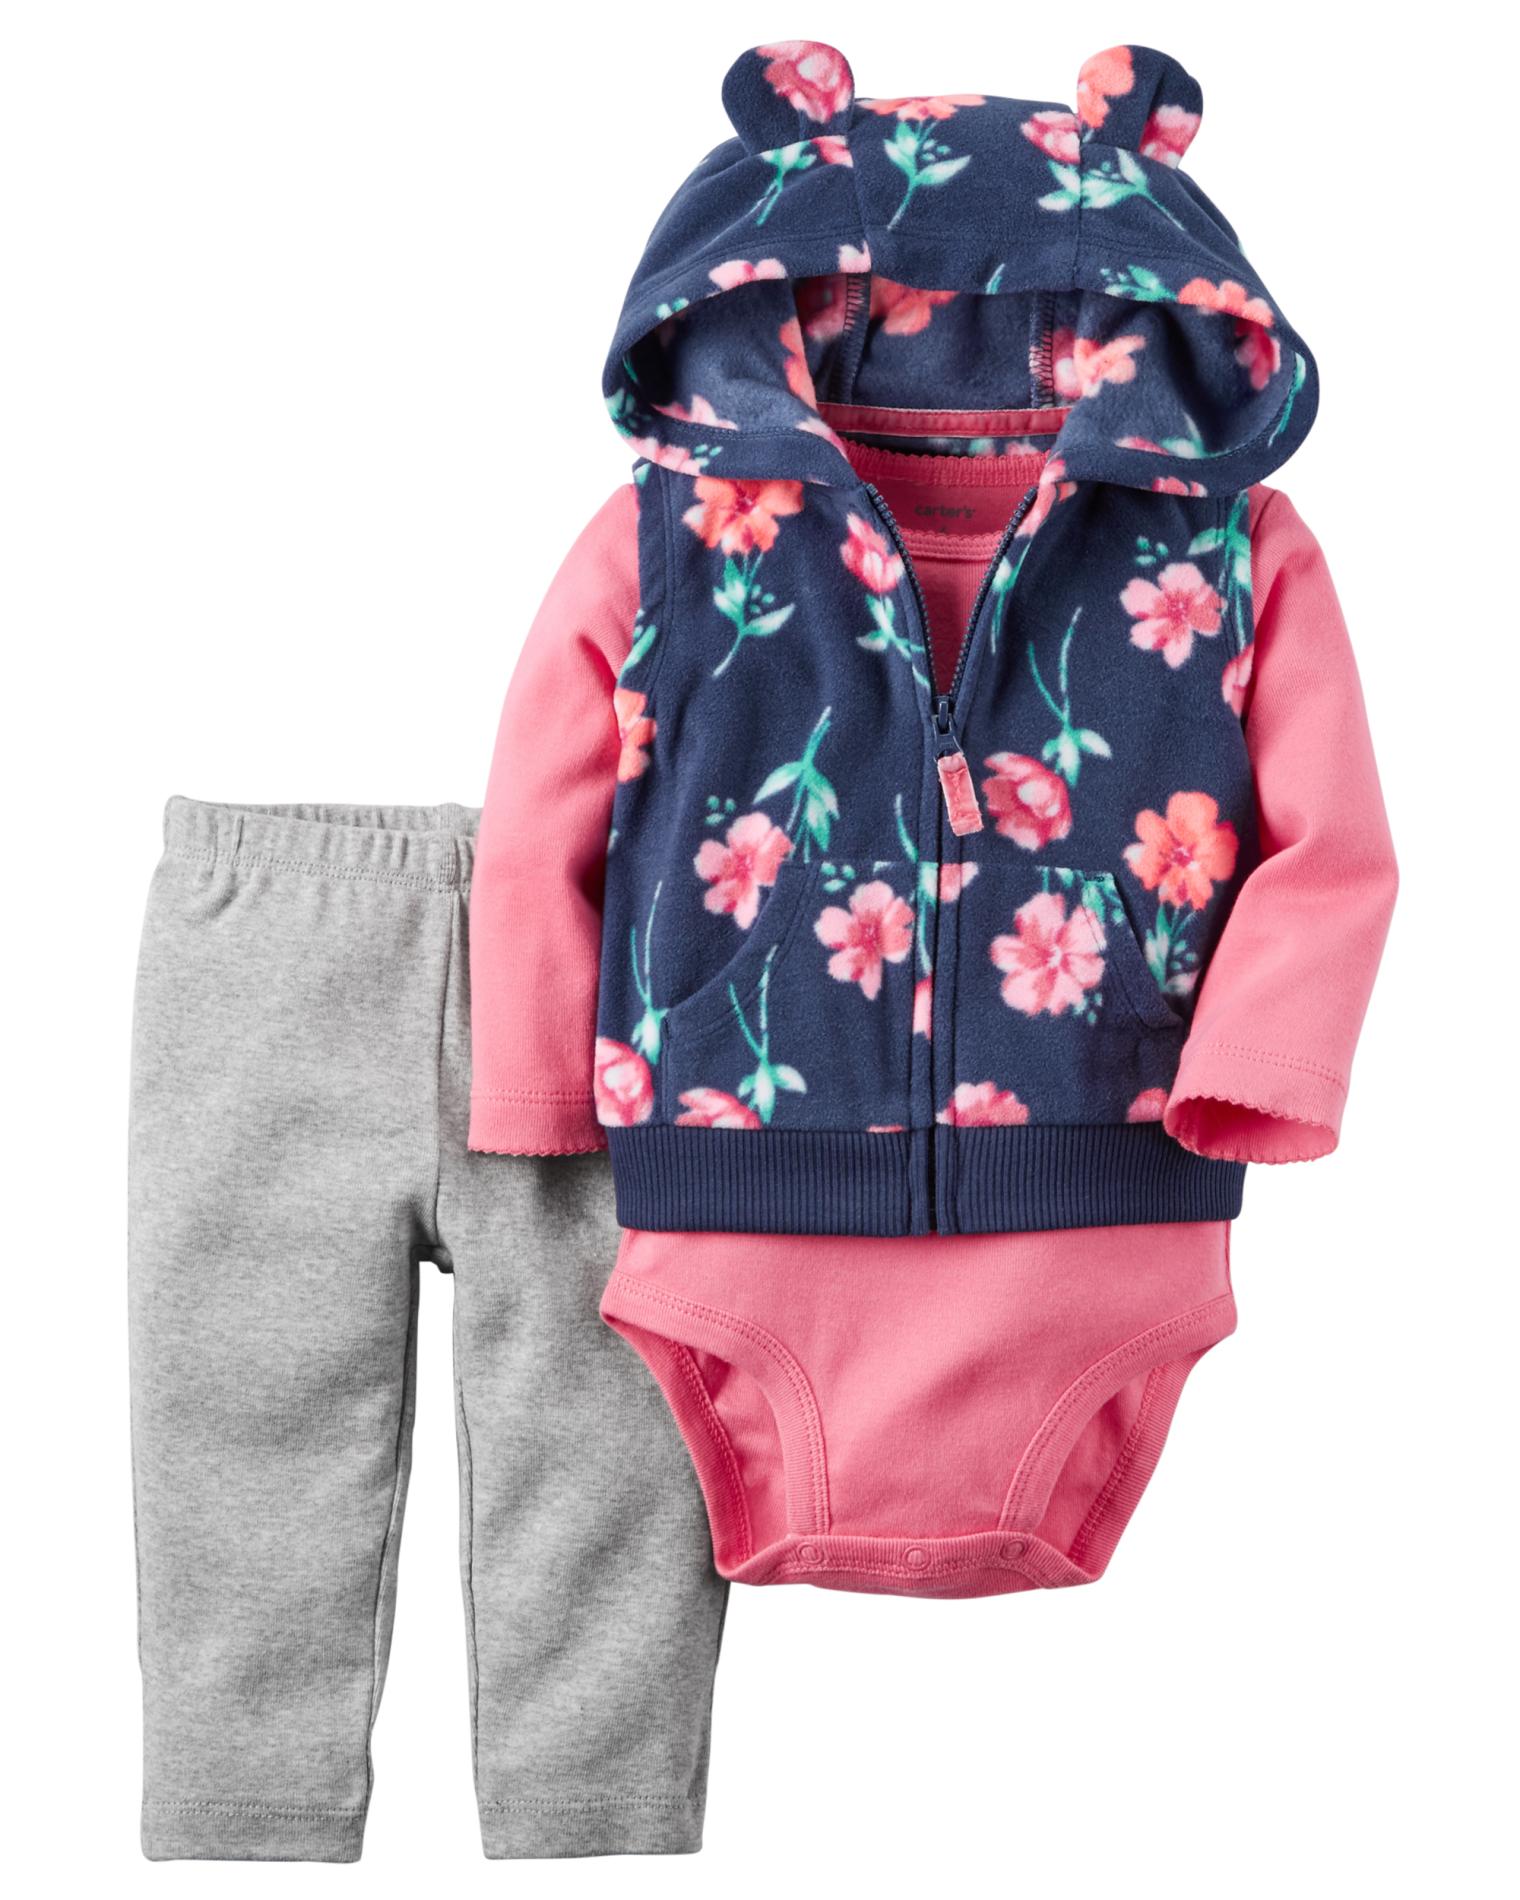 Carter's Newborn & Infant Girls' Hooded Vest, Bodysuit & Leggings - Floral